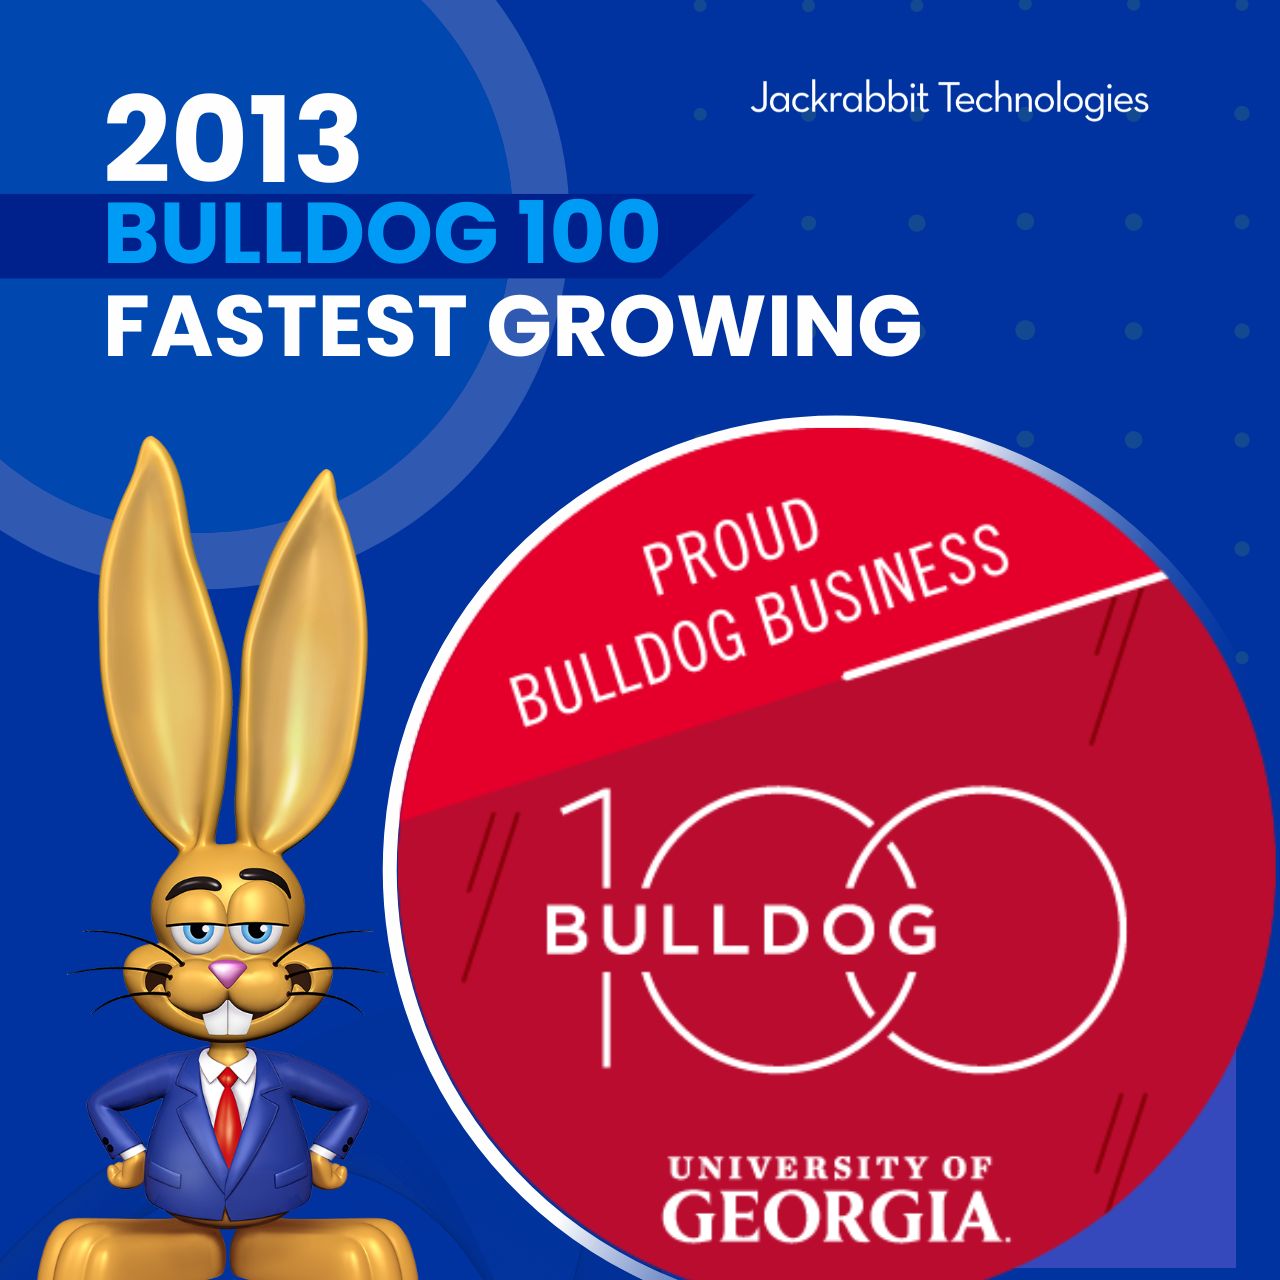 jackrabbit makes 2013 bulldog 100